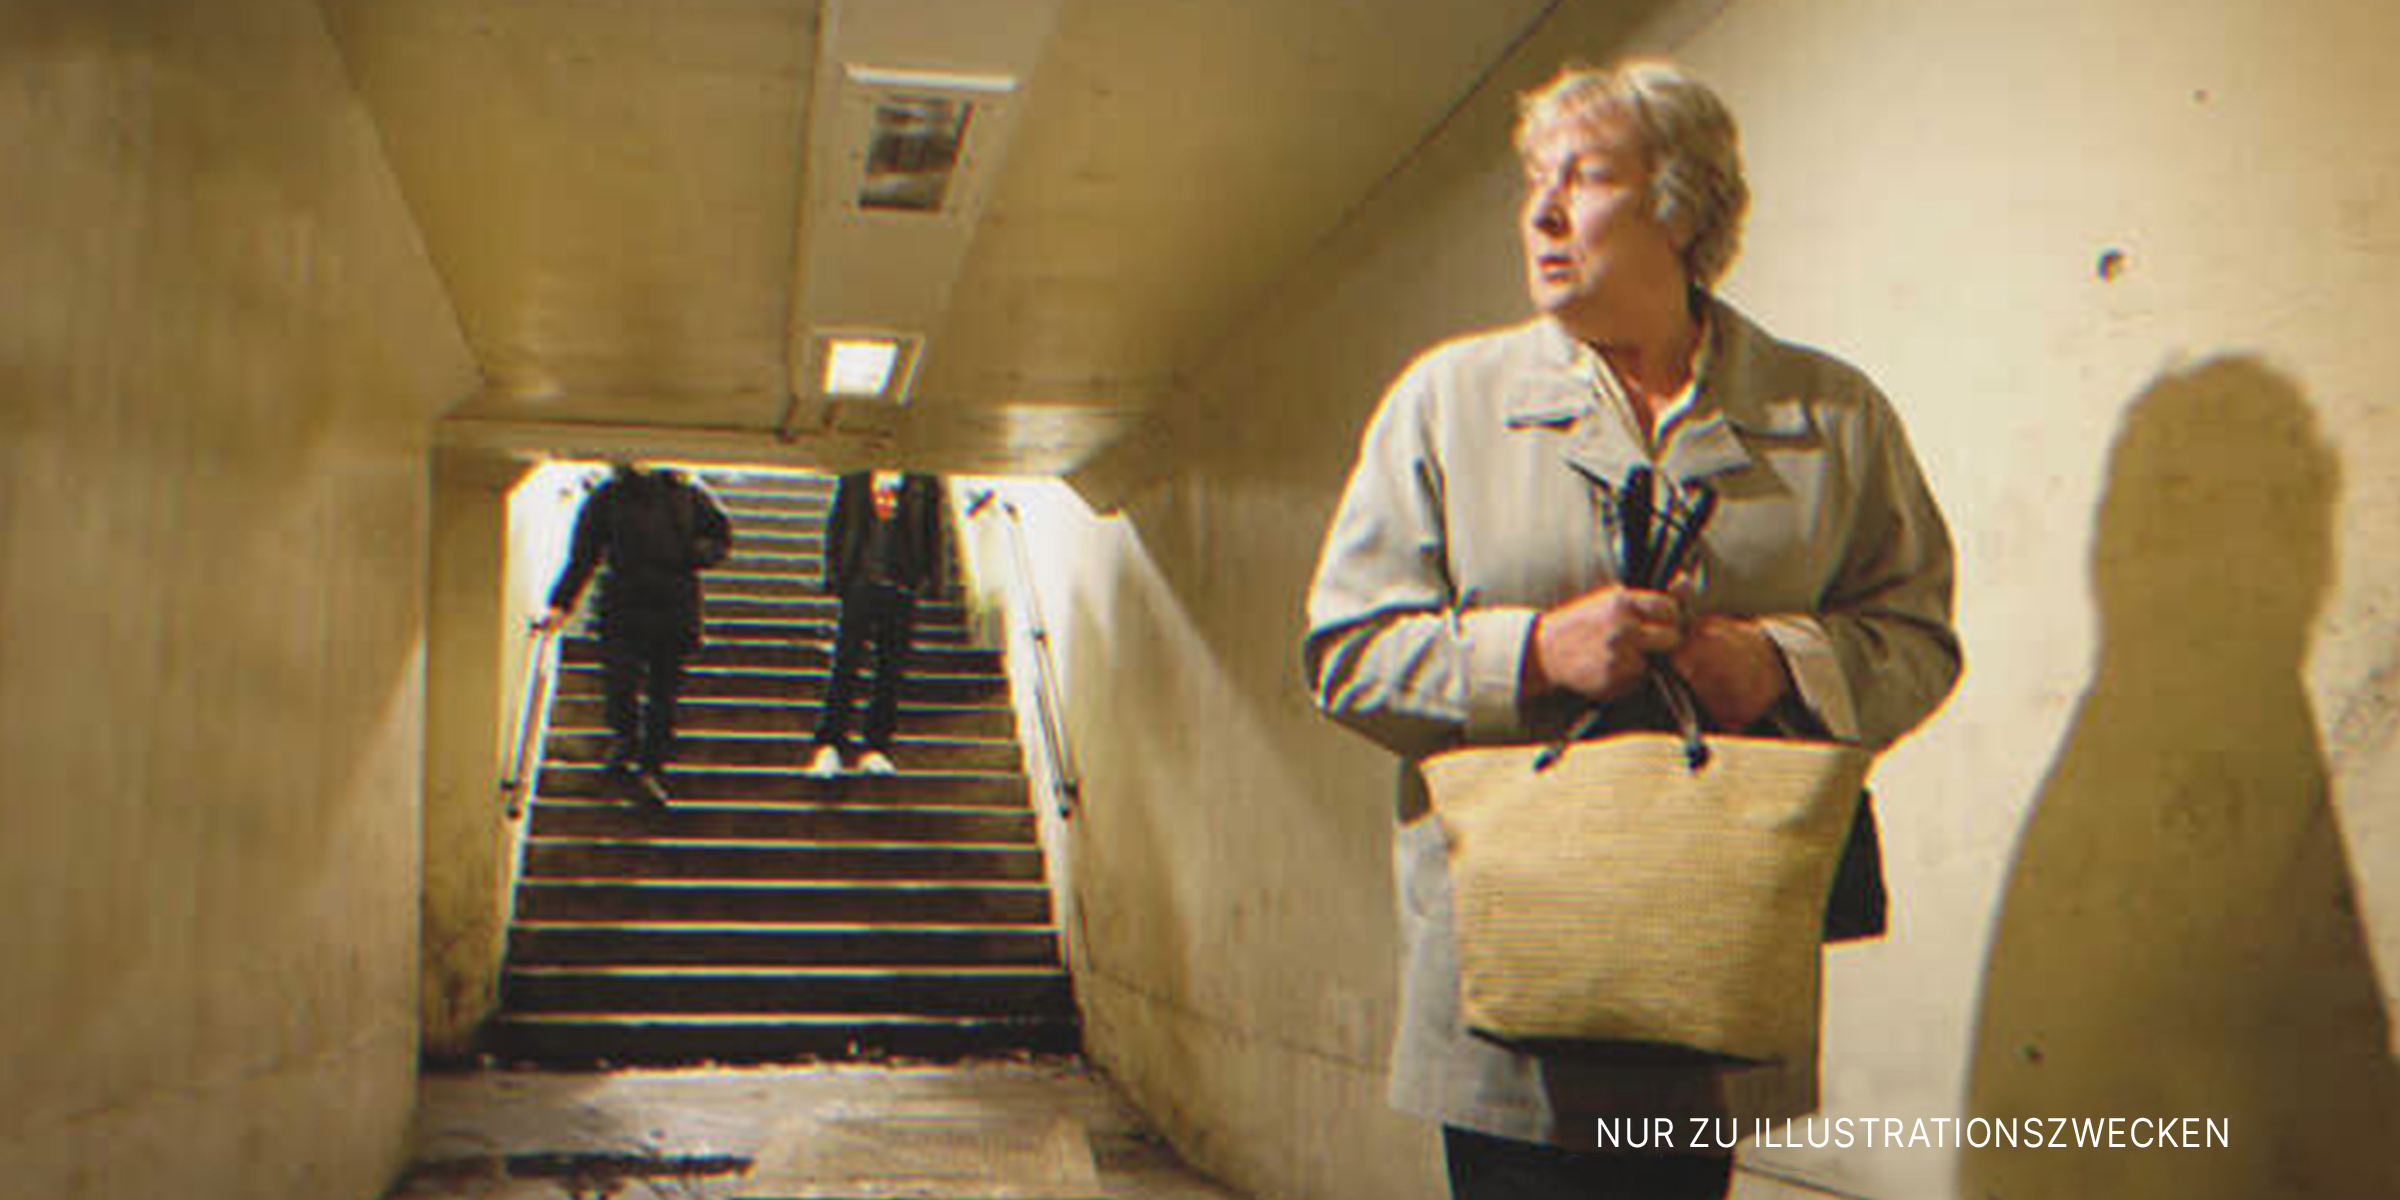 Ältere Frau umklammert ihre Tasche in der U-Bahn | Quelle: Getty Images